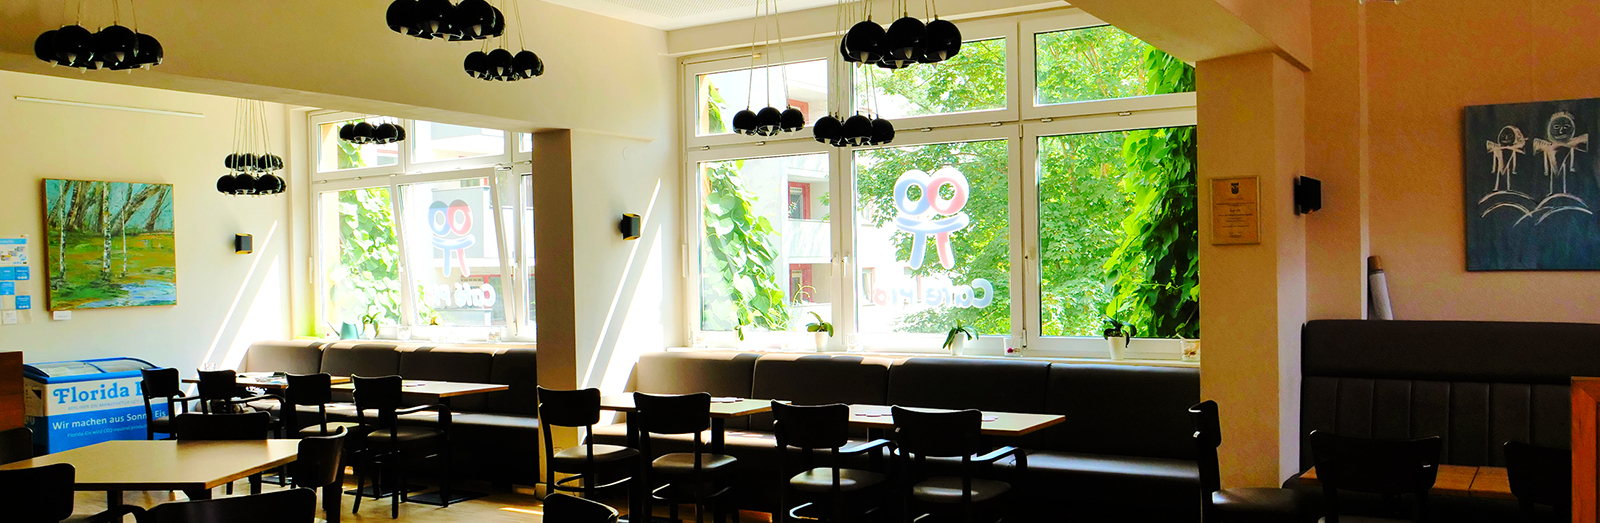 Blick ins Café Pi8 im Ernst Lange Haus